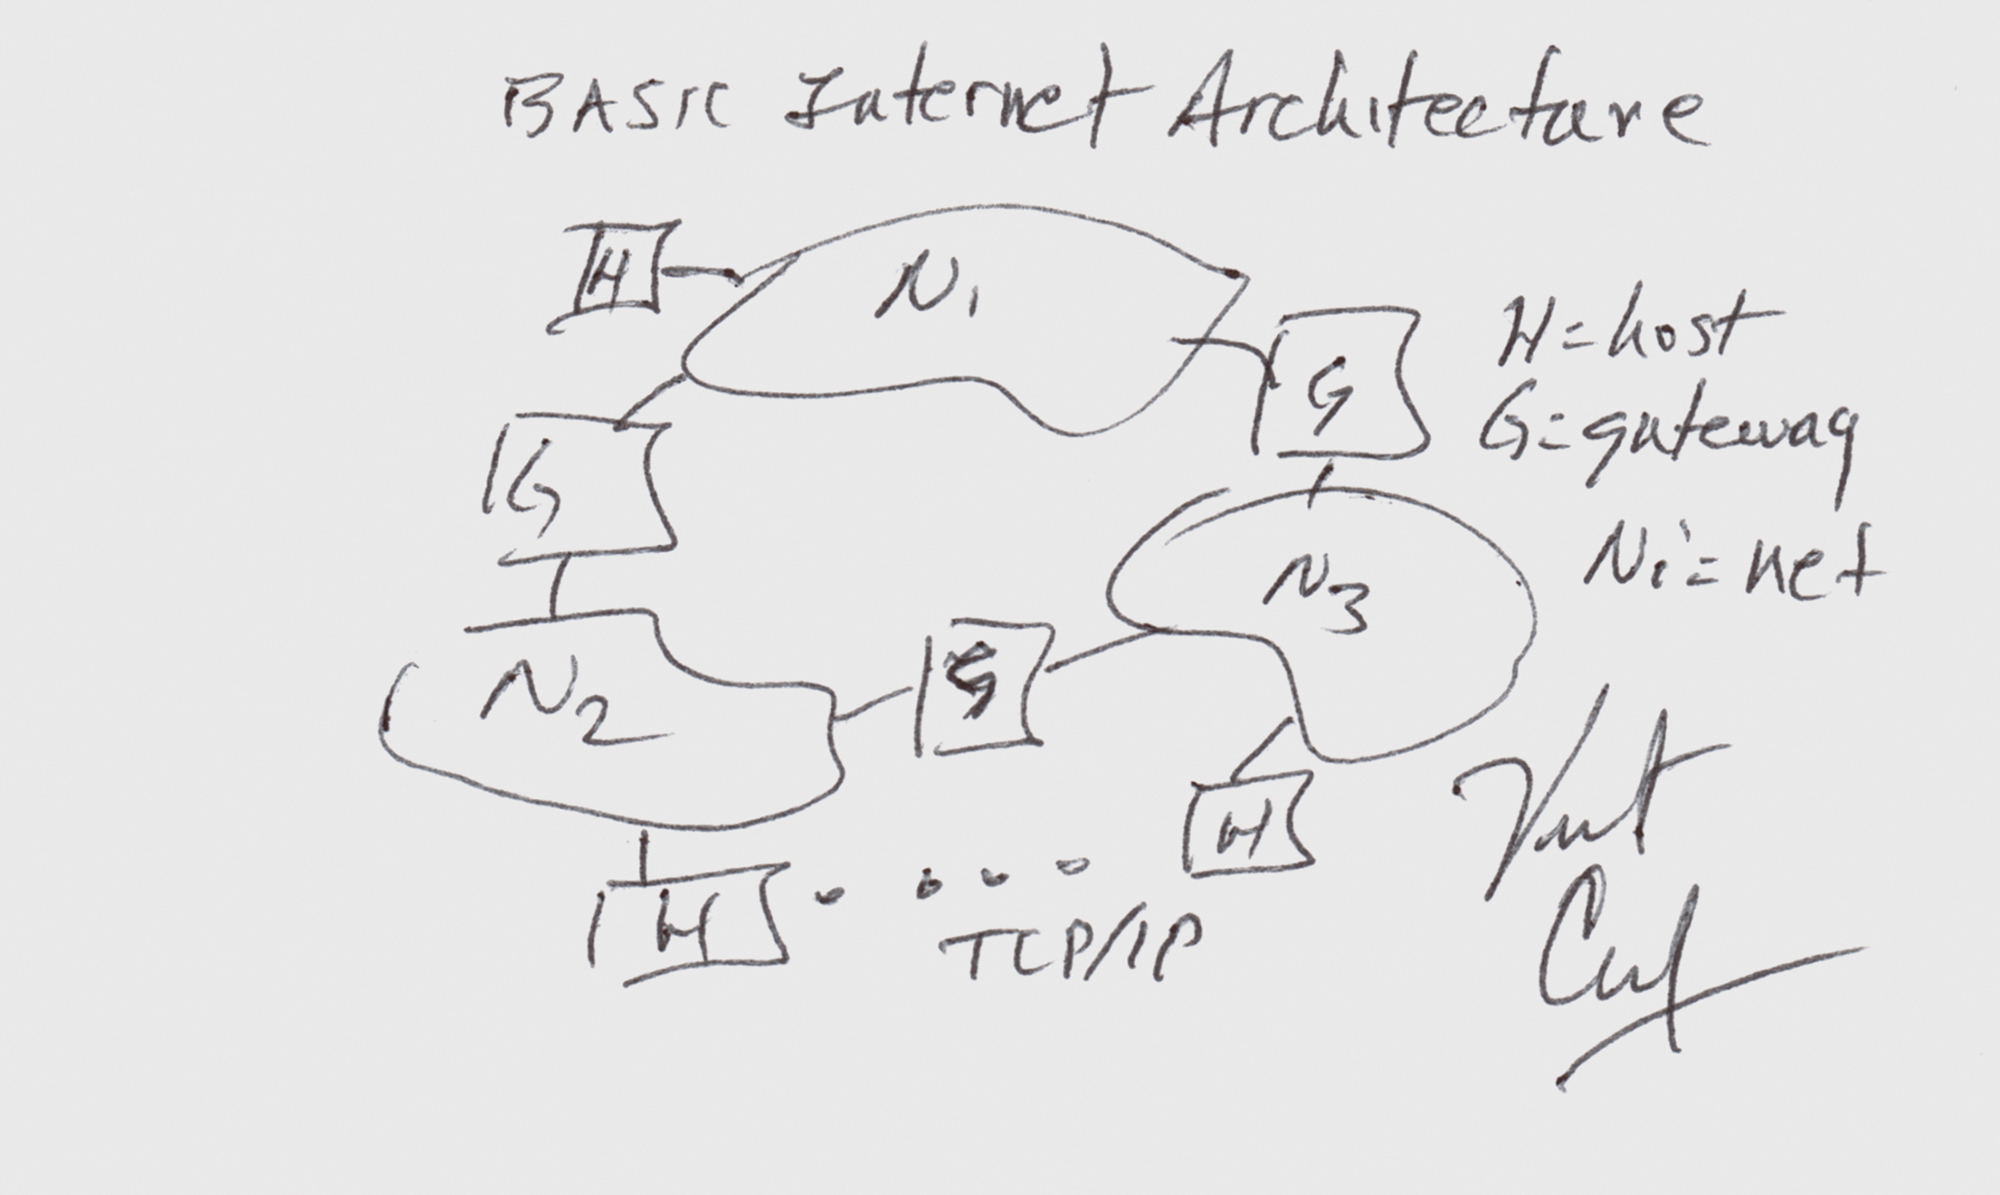 Lot #4257 Vint Cerf Signed Sketch - Basic Internet